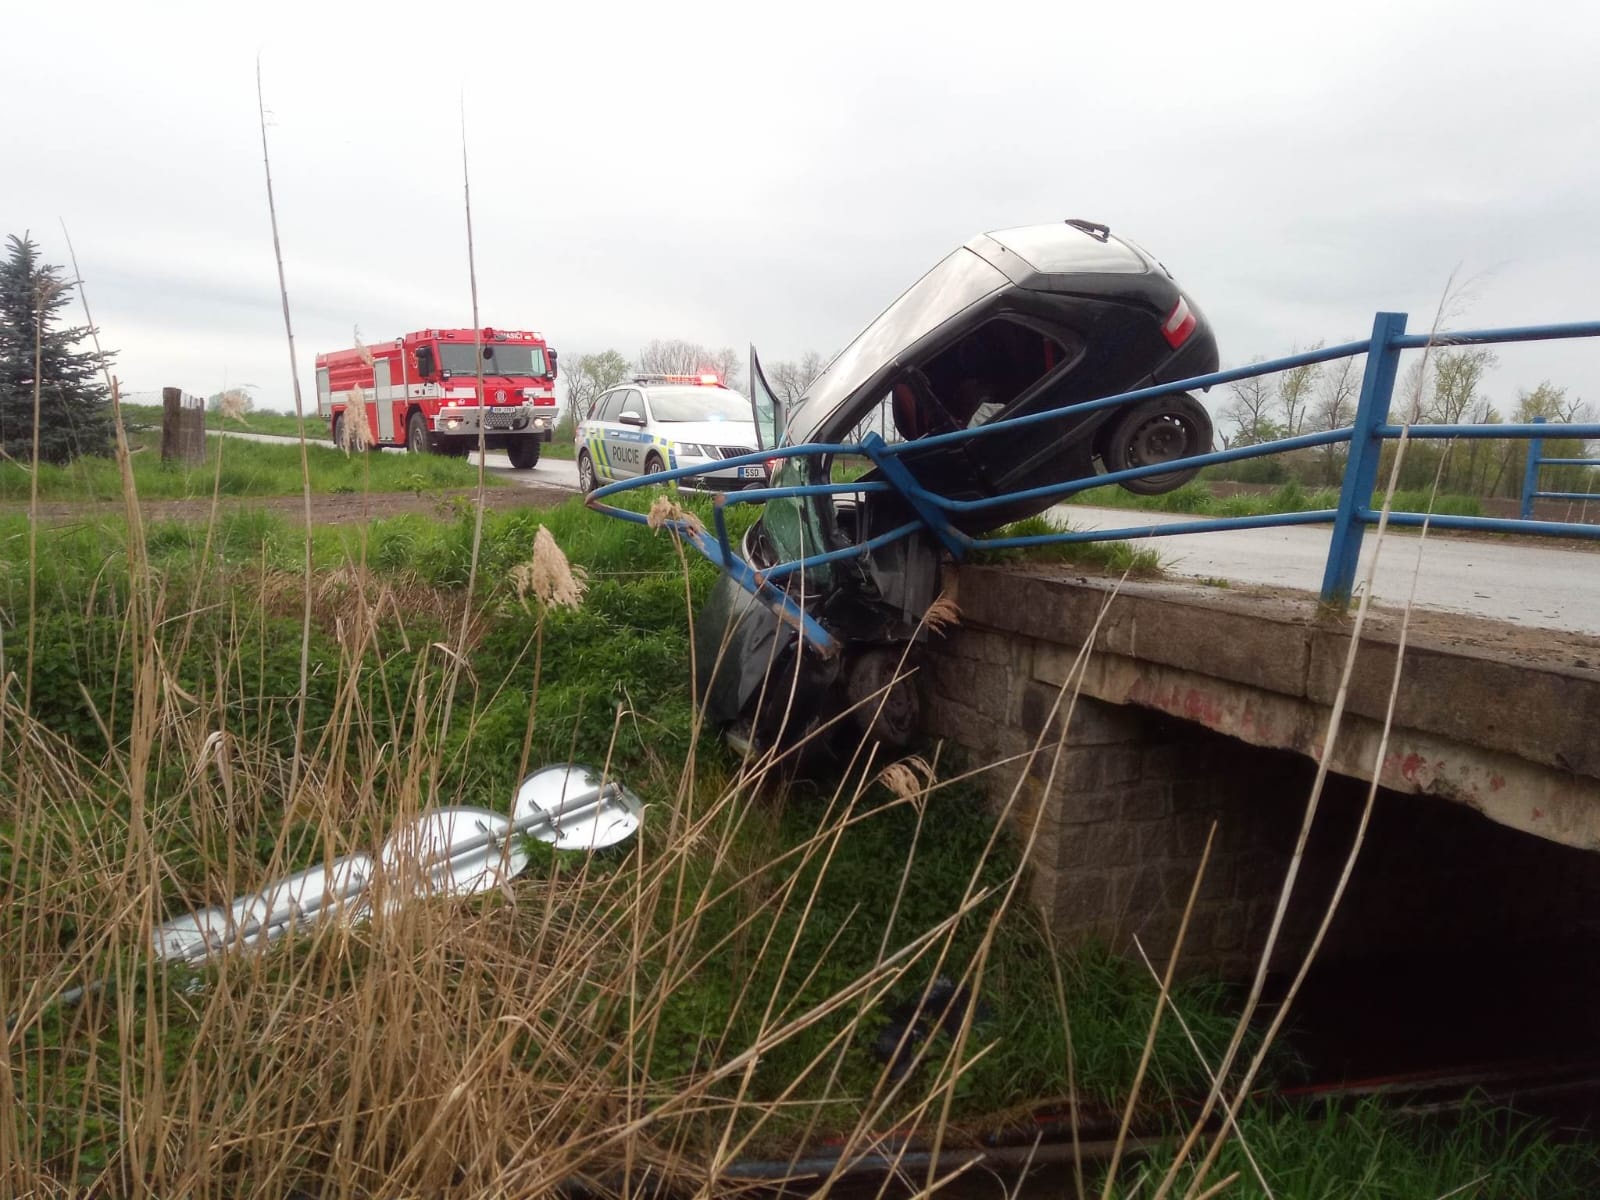 101-Havárie osobního automobilu nedaleko čáslavského letiště.jpeg